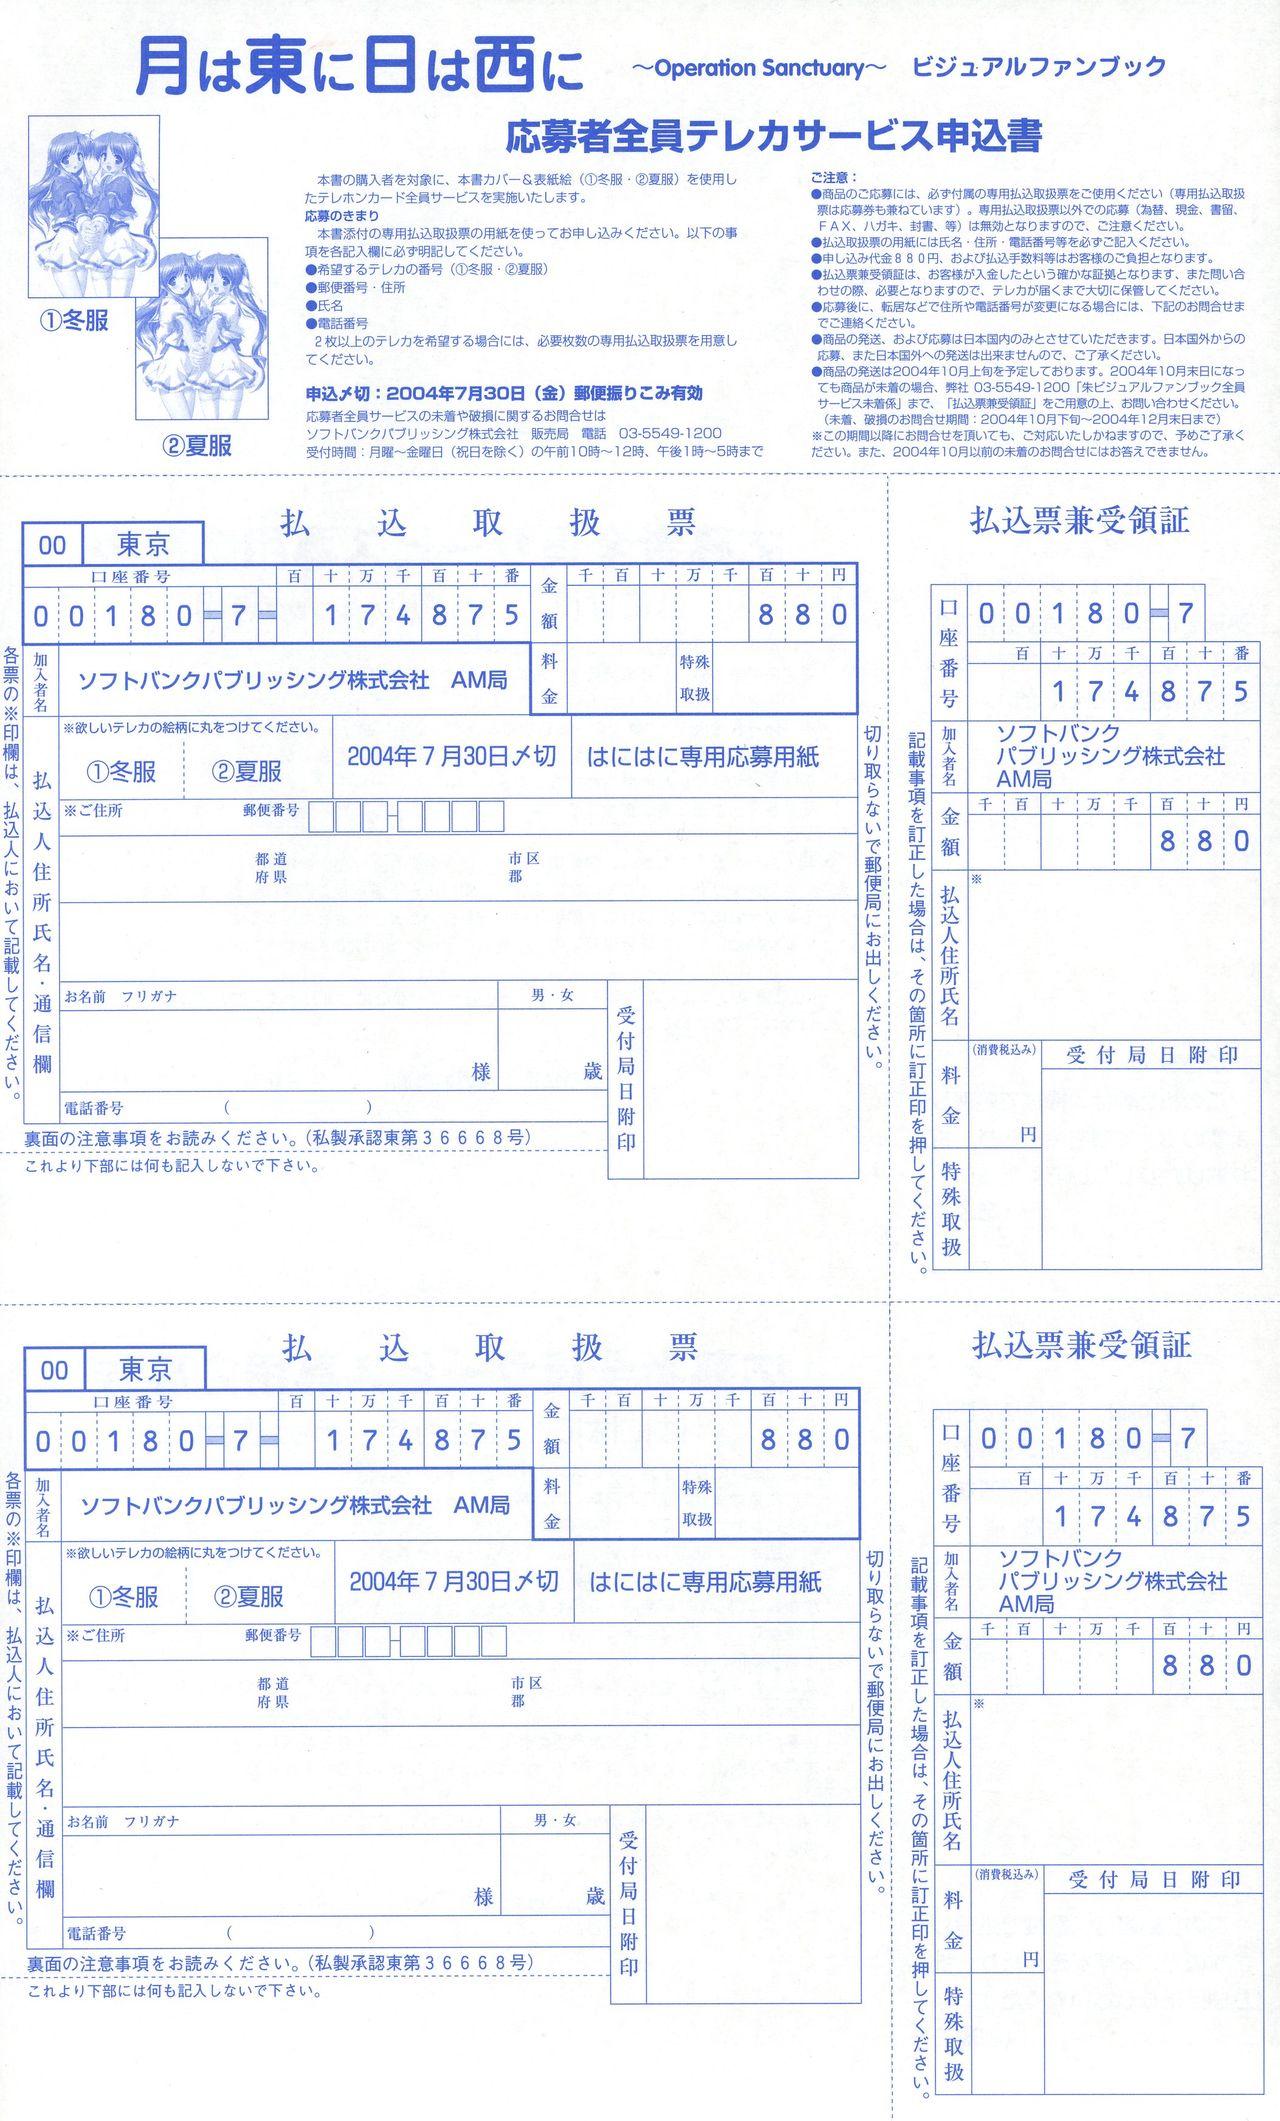 Tsuki wa Higashi ni Hi wa Nishi ni - Operation Sanctuary - Visual Fan Book Shokai Ban 251